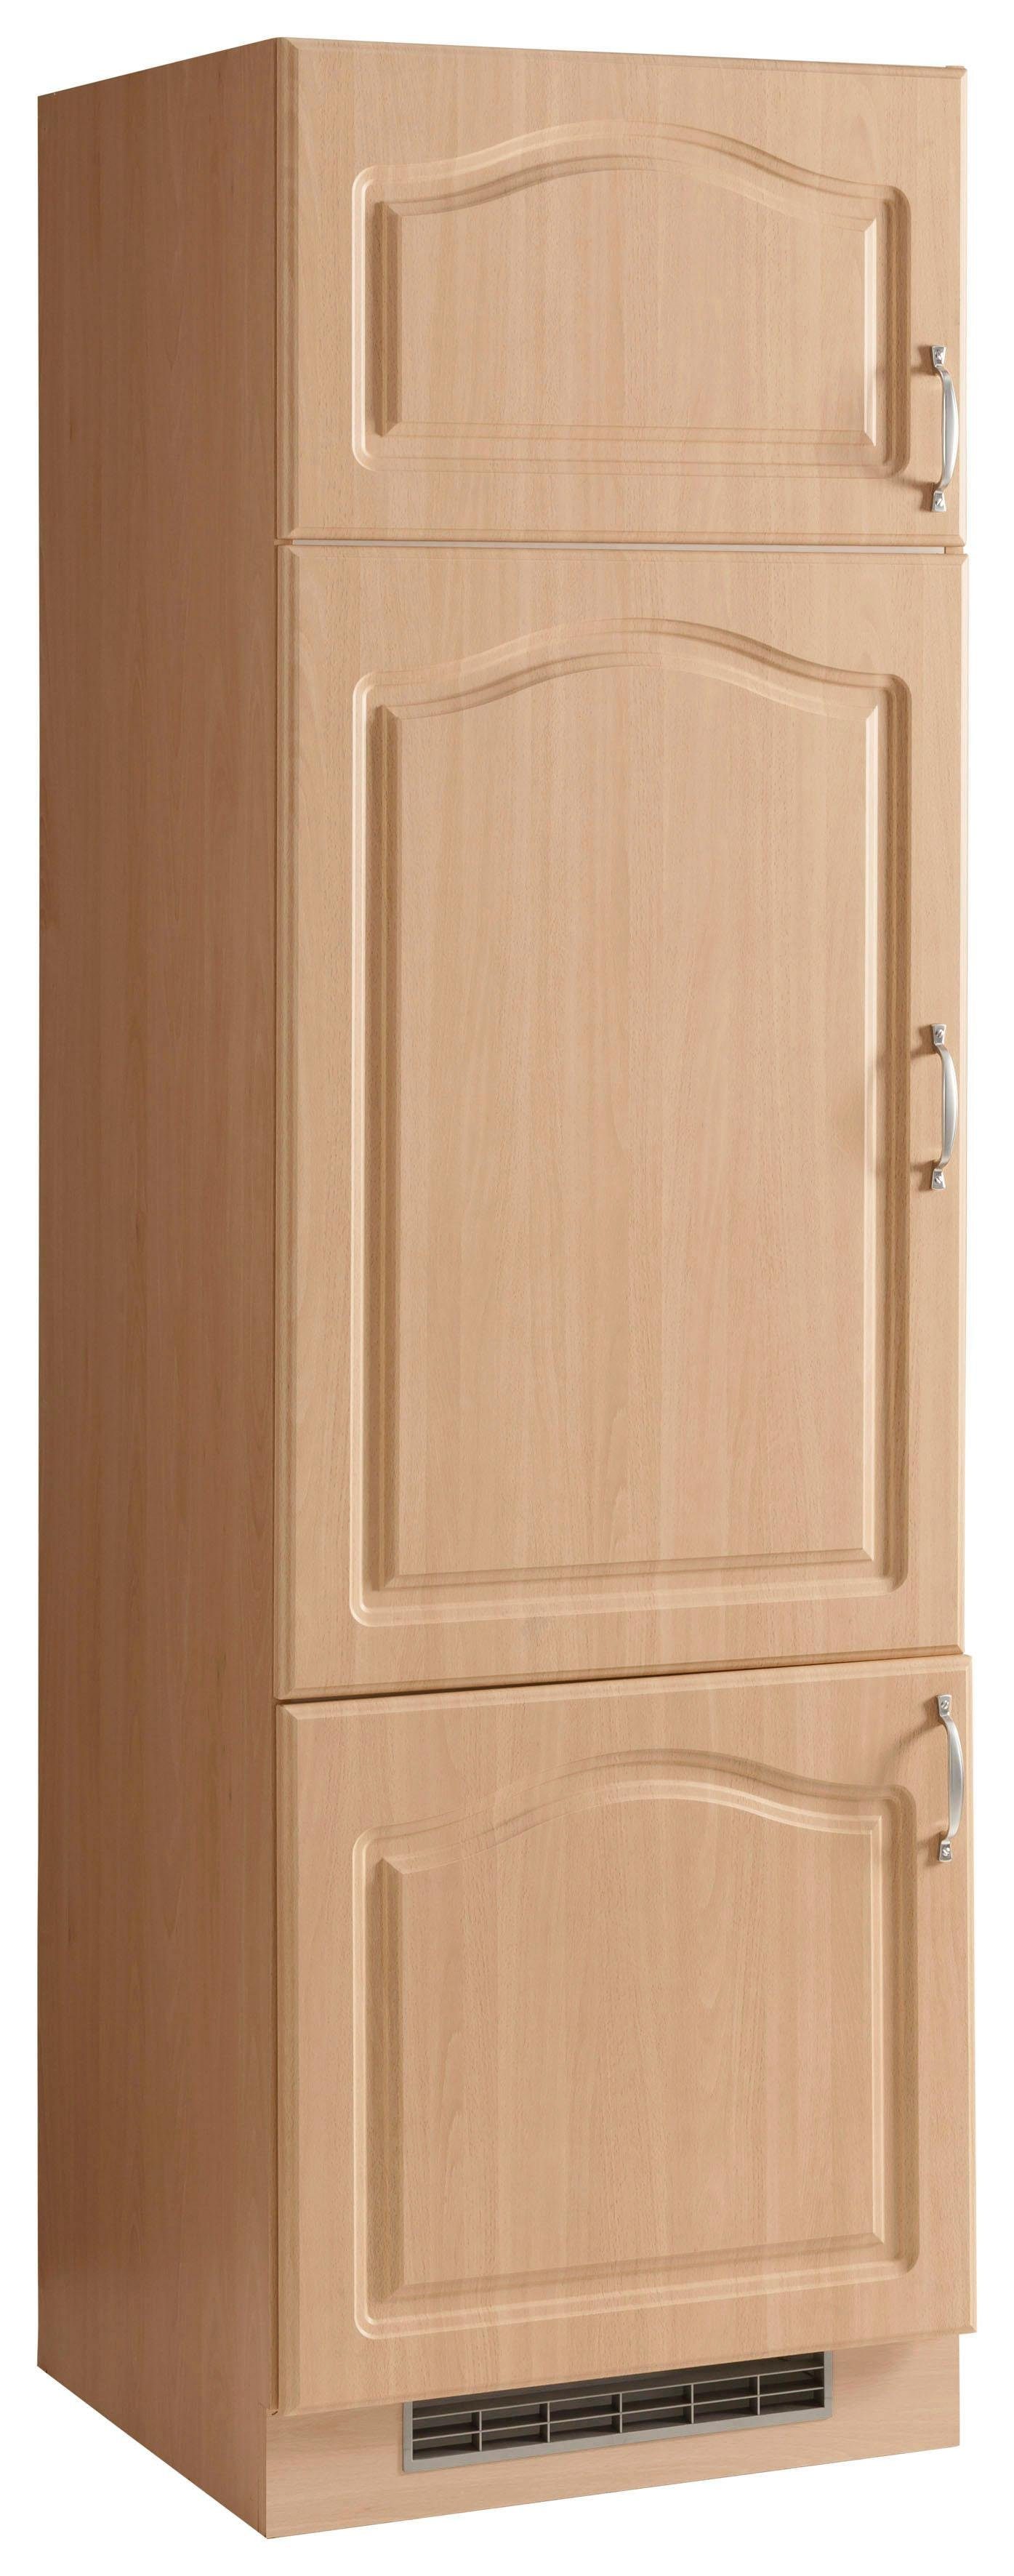 wiho Küchen Kühlumbauschrank Linz 60 cm breit Buchefarben | buchefarben | Umbauschränke